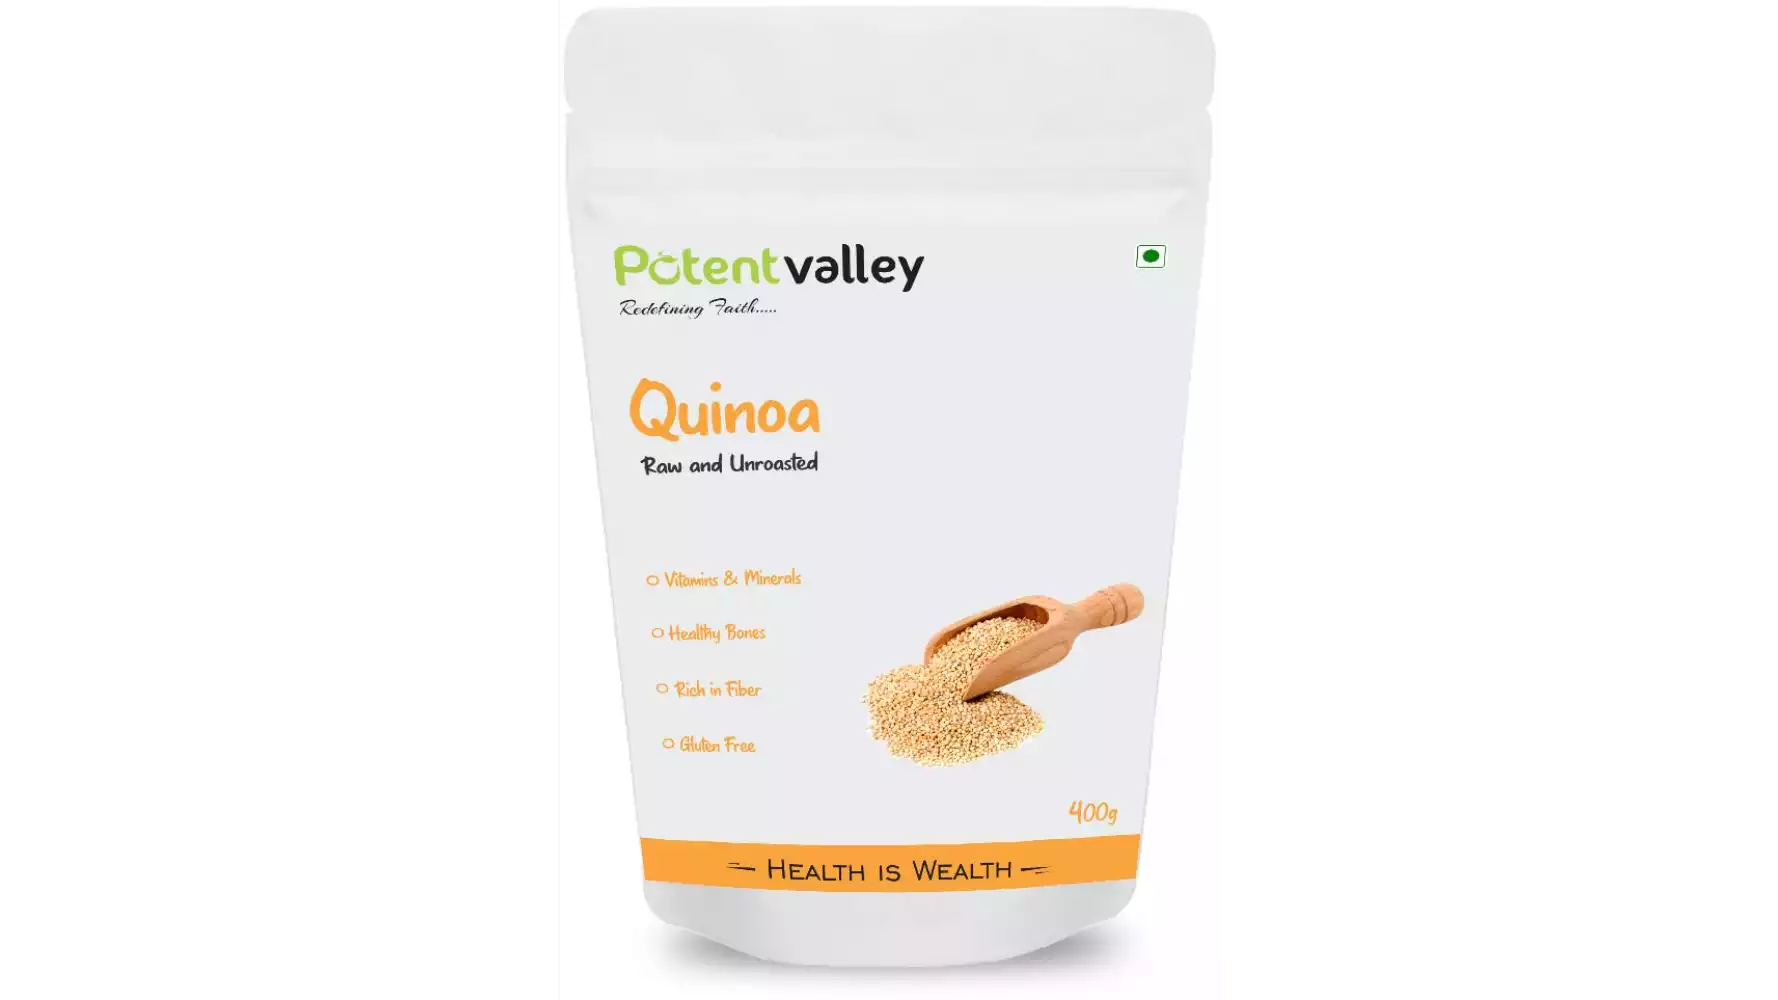 Potentvalley Unroasted Quinoa White Whole Grain Raw Organic (400g)